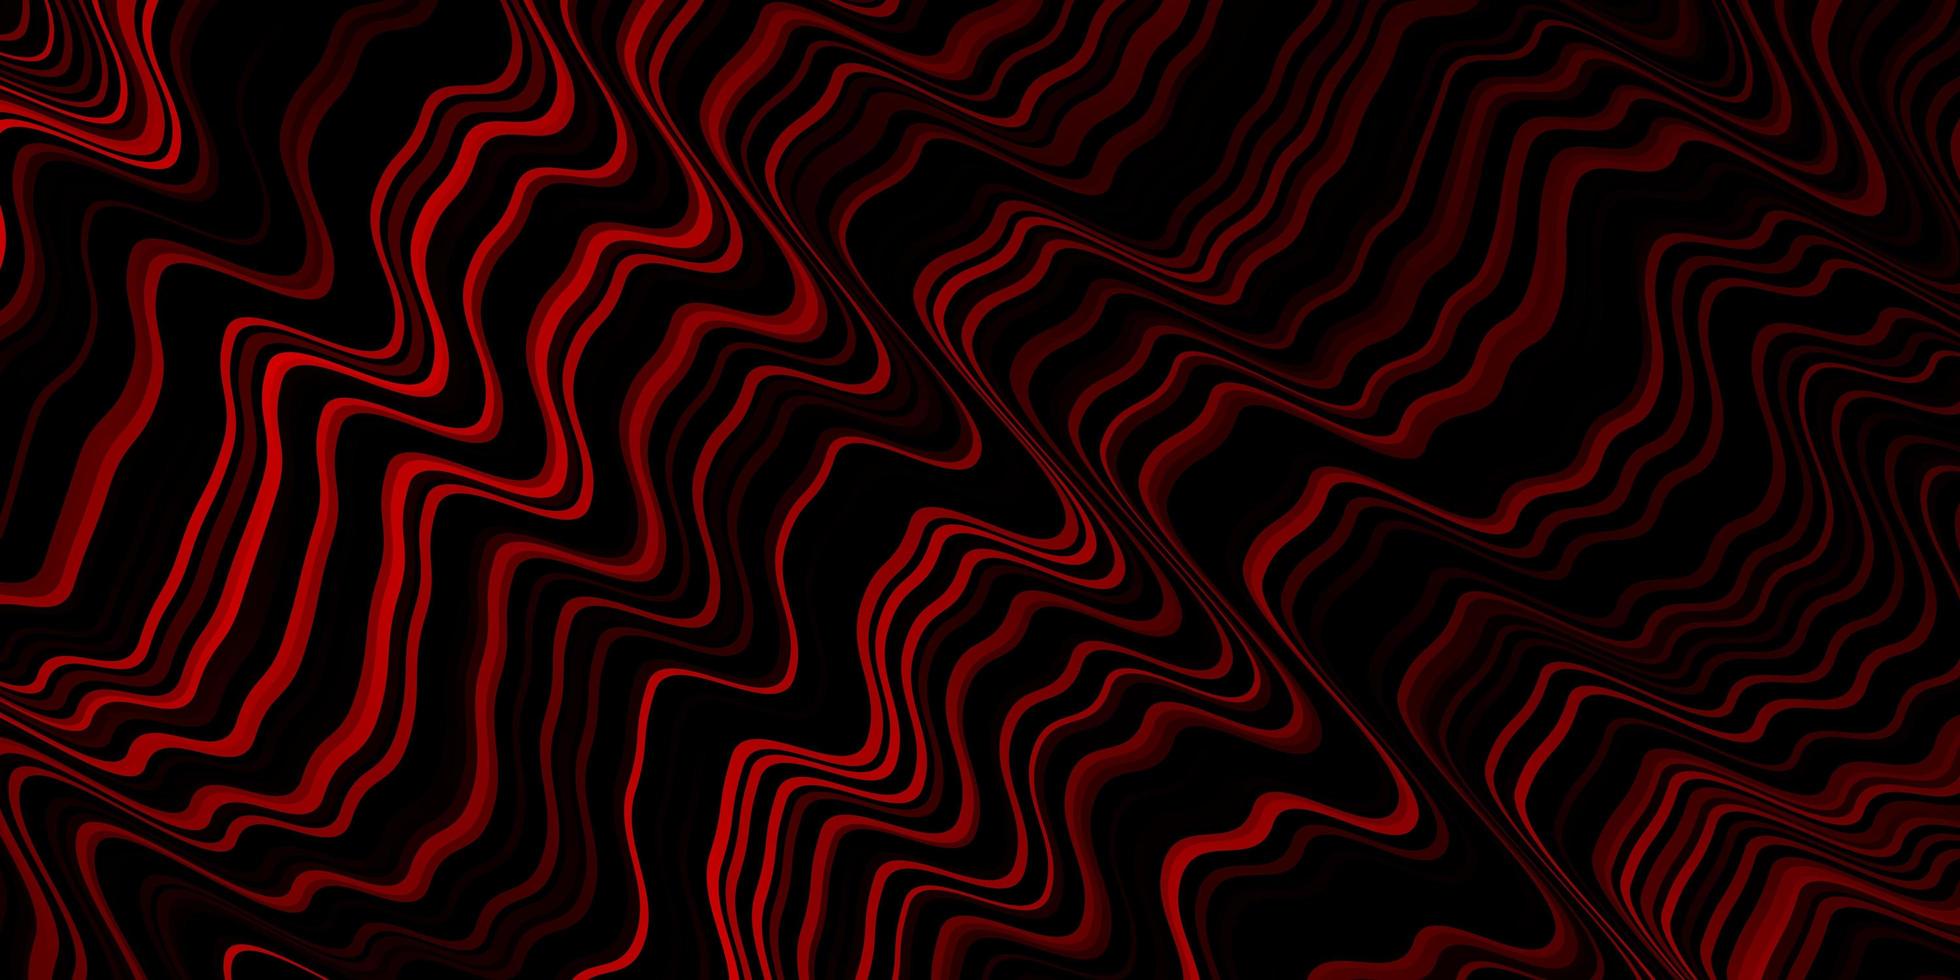 sfondo vettoriale rosso scuro con fiocchi.